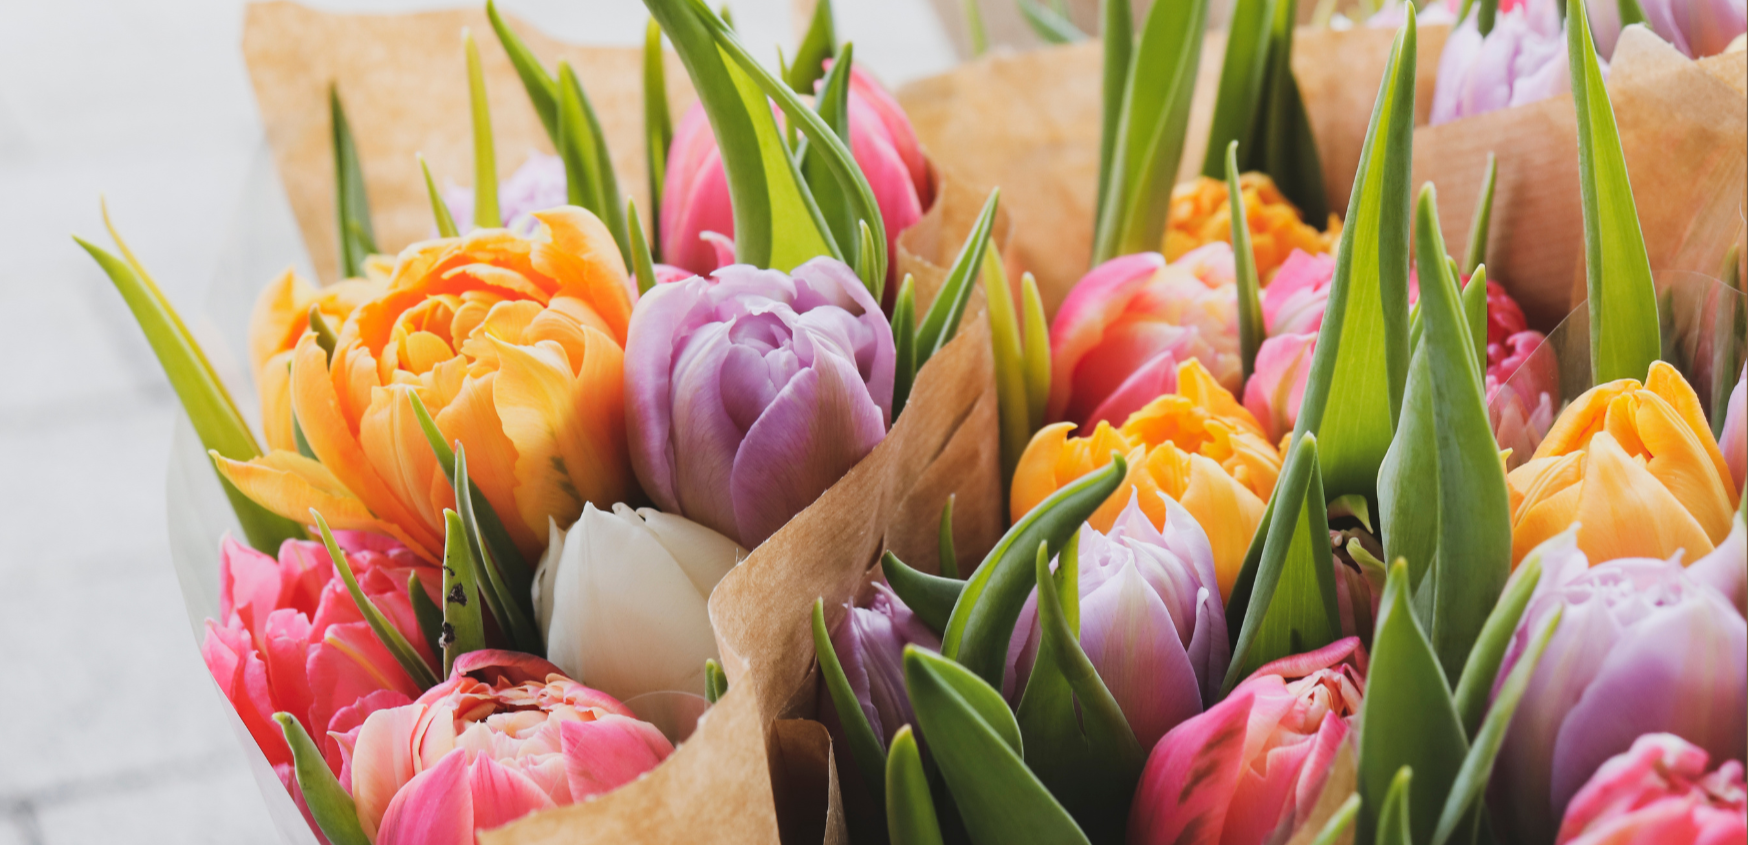 Smukke bundter af farverige tulipaner i lilla, orange og lyserød. 